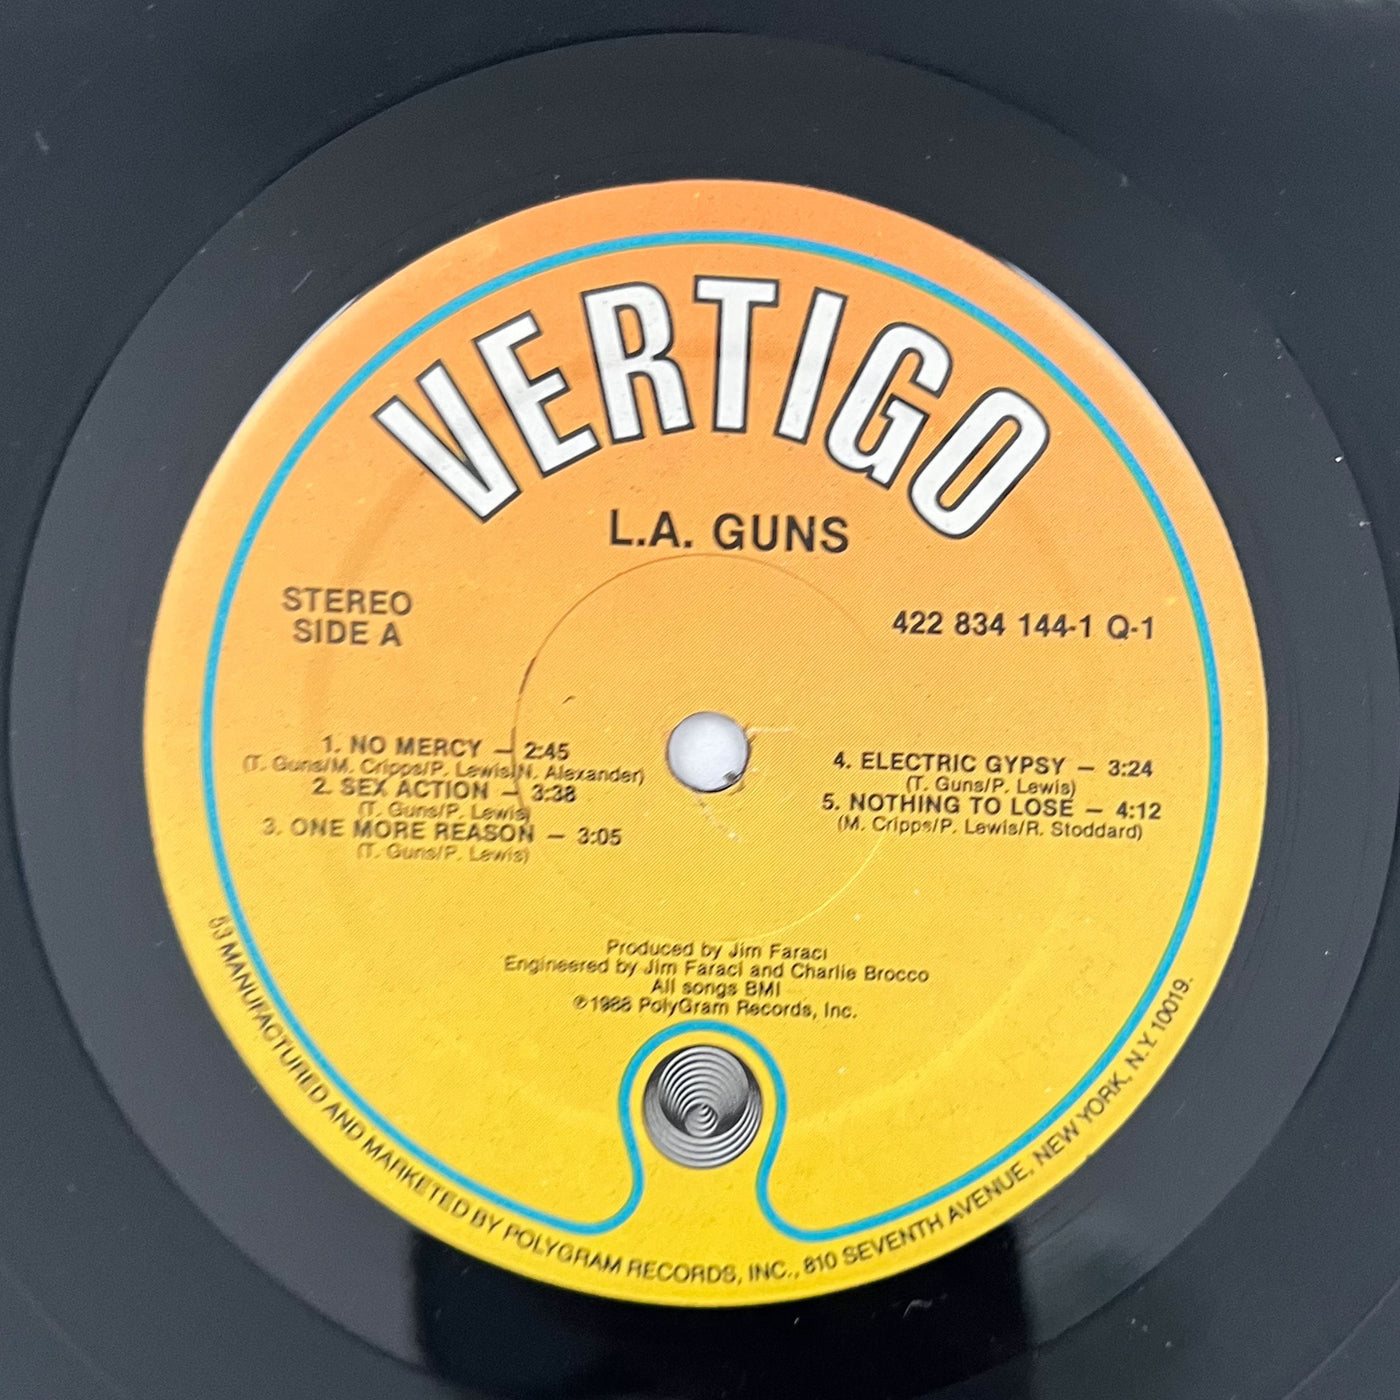 Vintage 1988 LA Guns LP self titled Vinyl Album